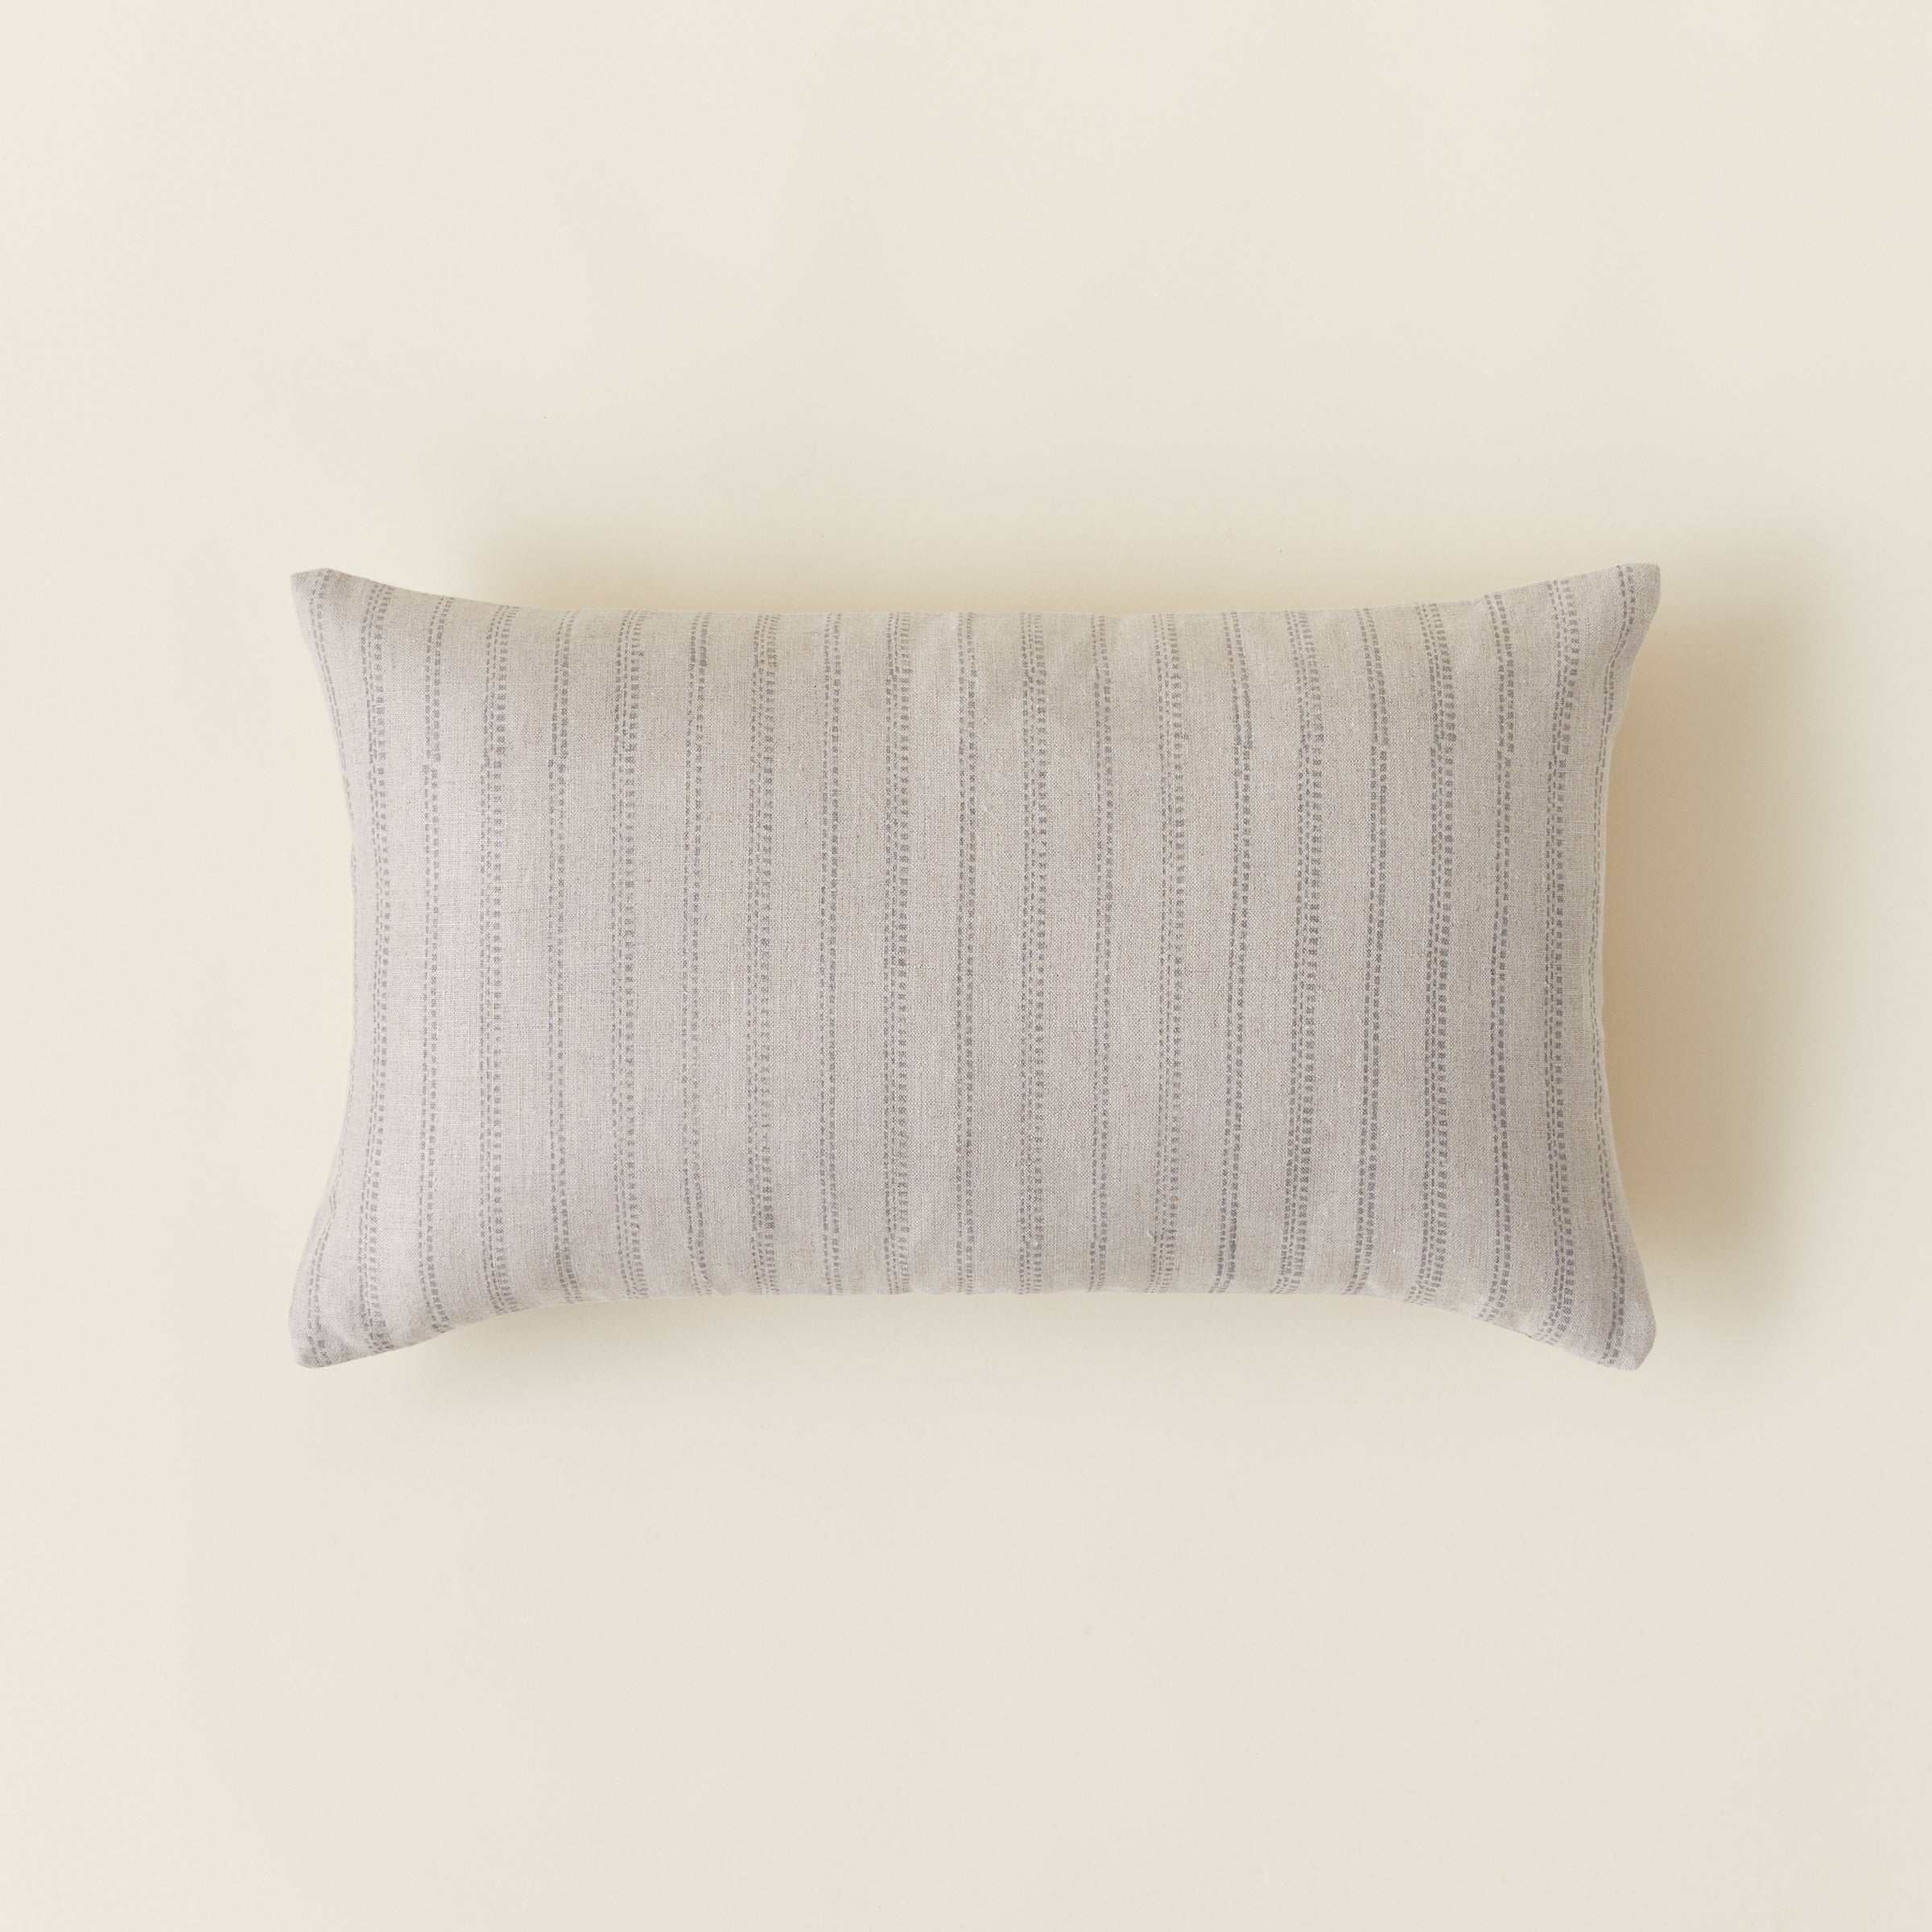 KMH x Ginger Sparrow -  Lumbar Pillow Cover